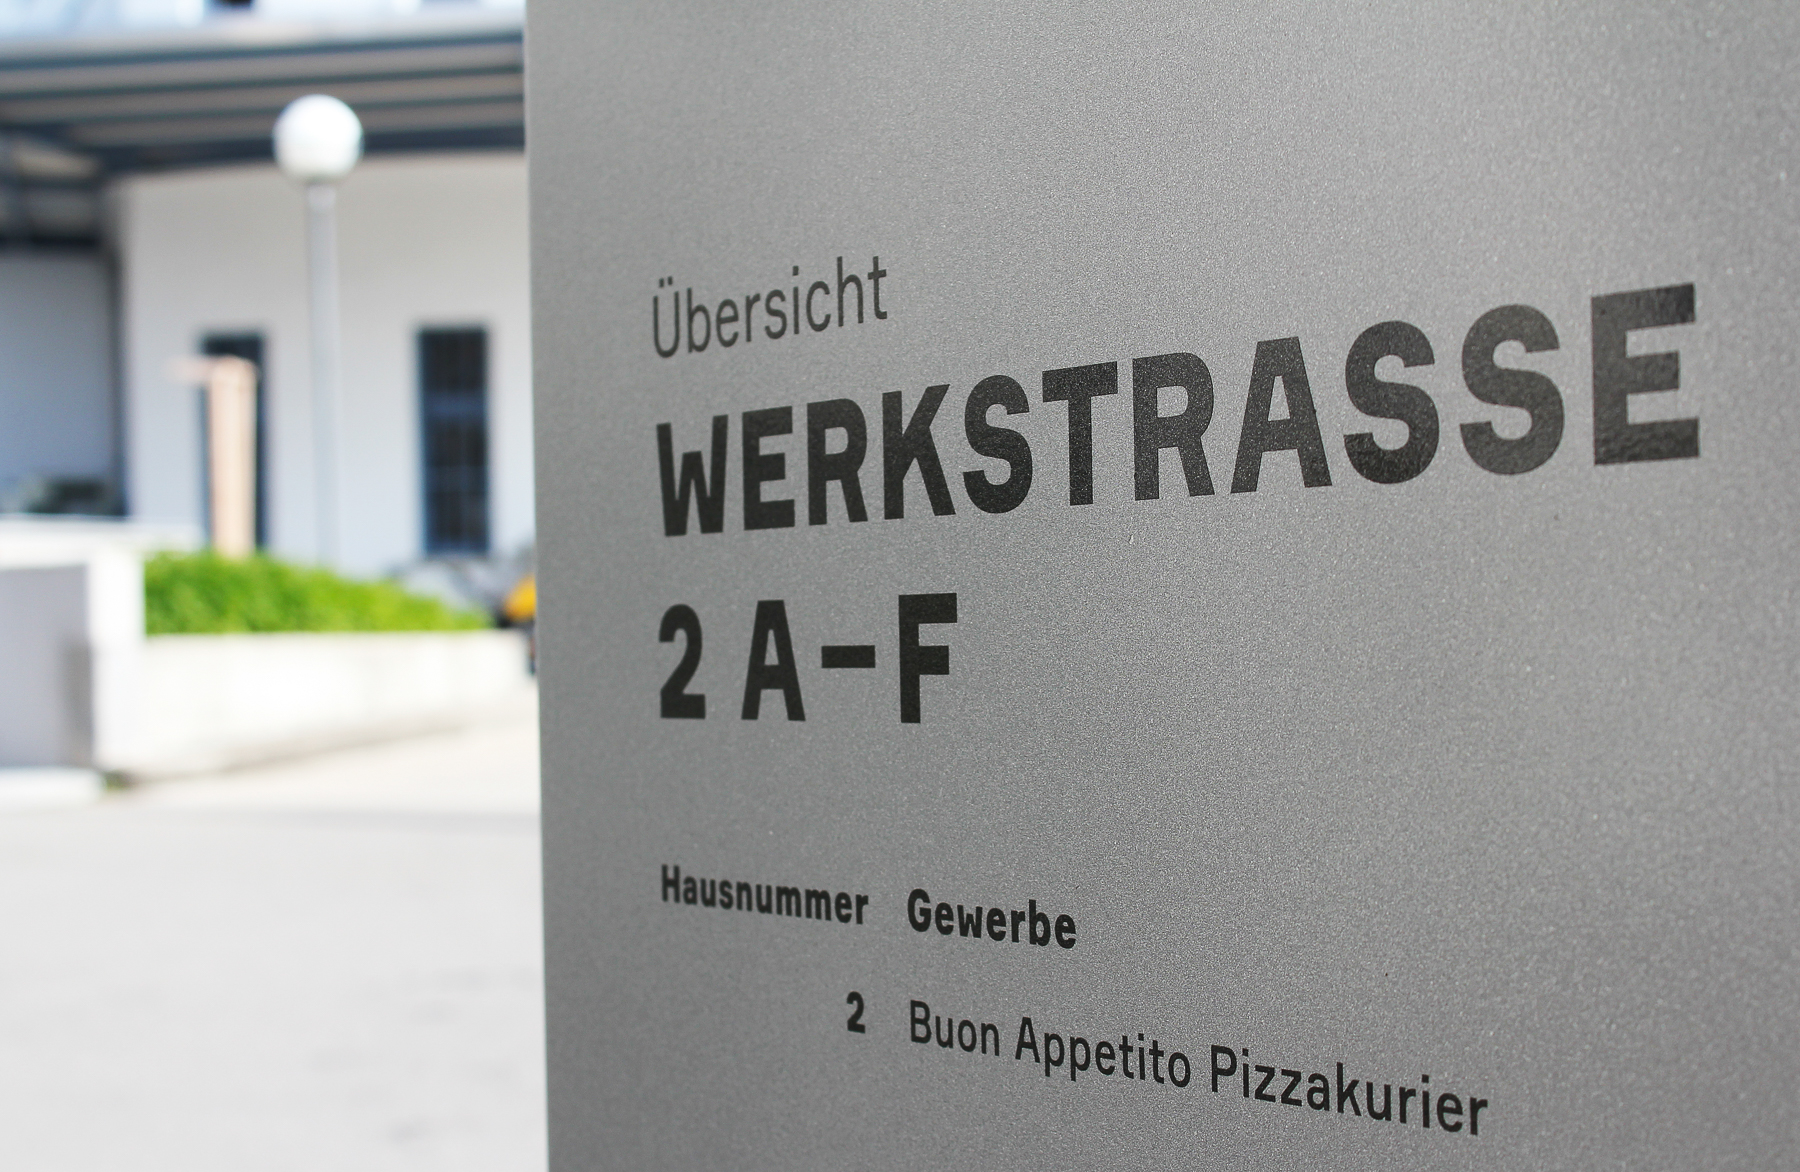 Büro Ideal + brunnergraf: Werbeagentur für Print, Web und Signaletik aus Rapperswil-Jona